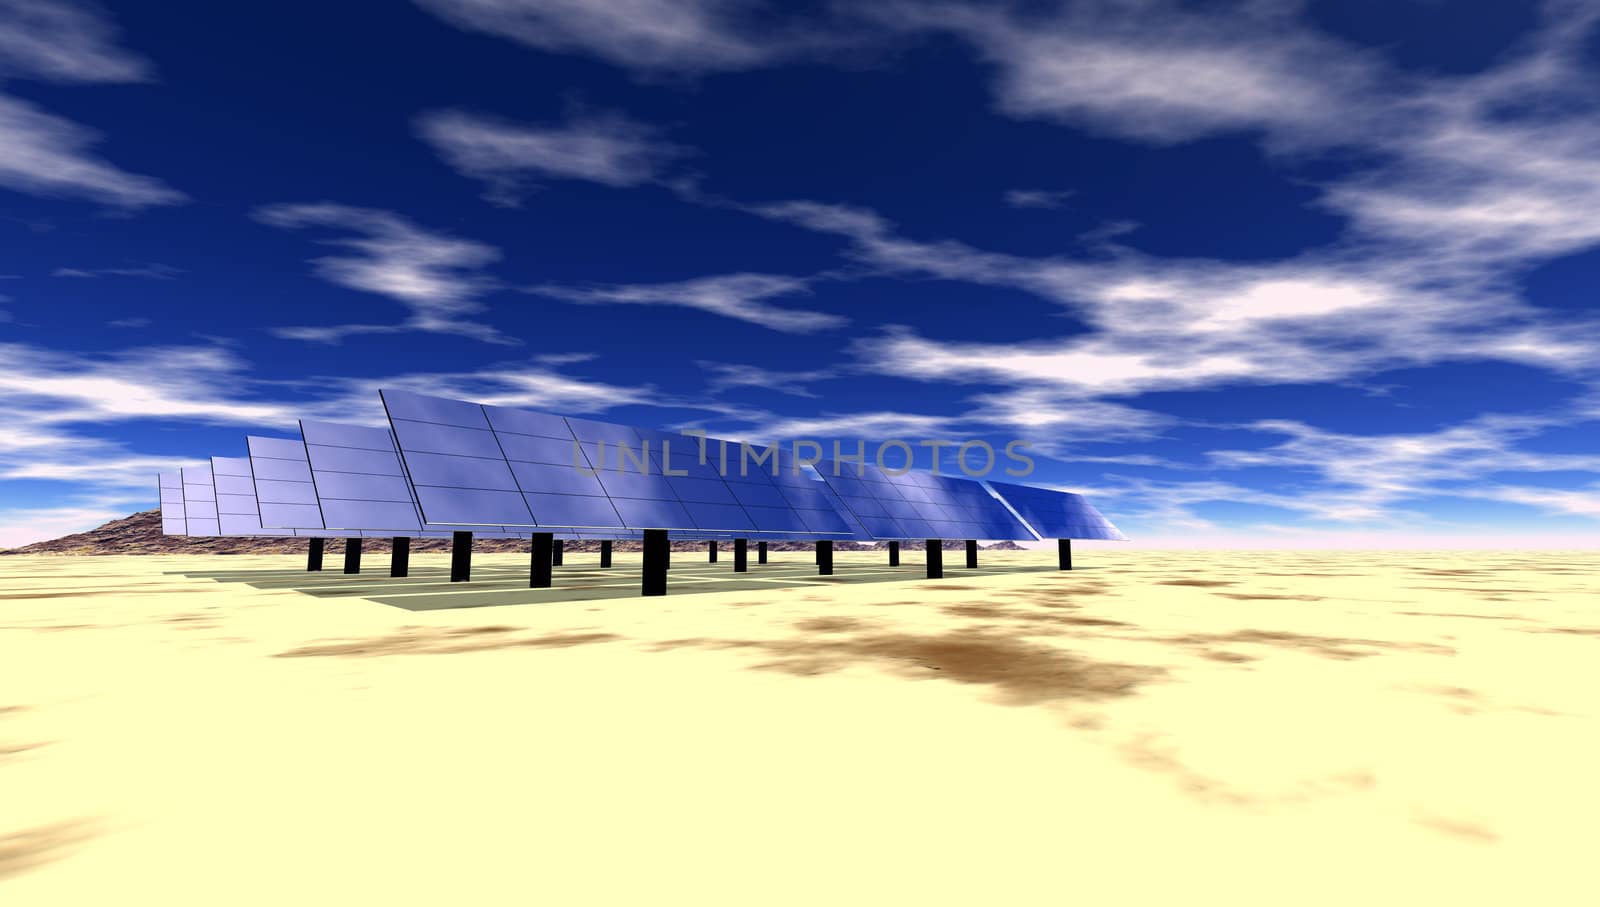 Solar electric panels in desert setting